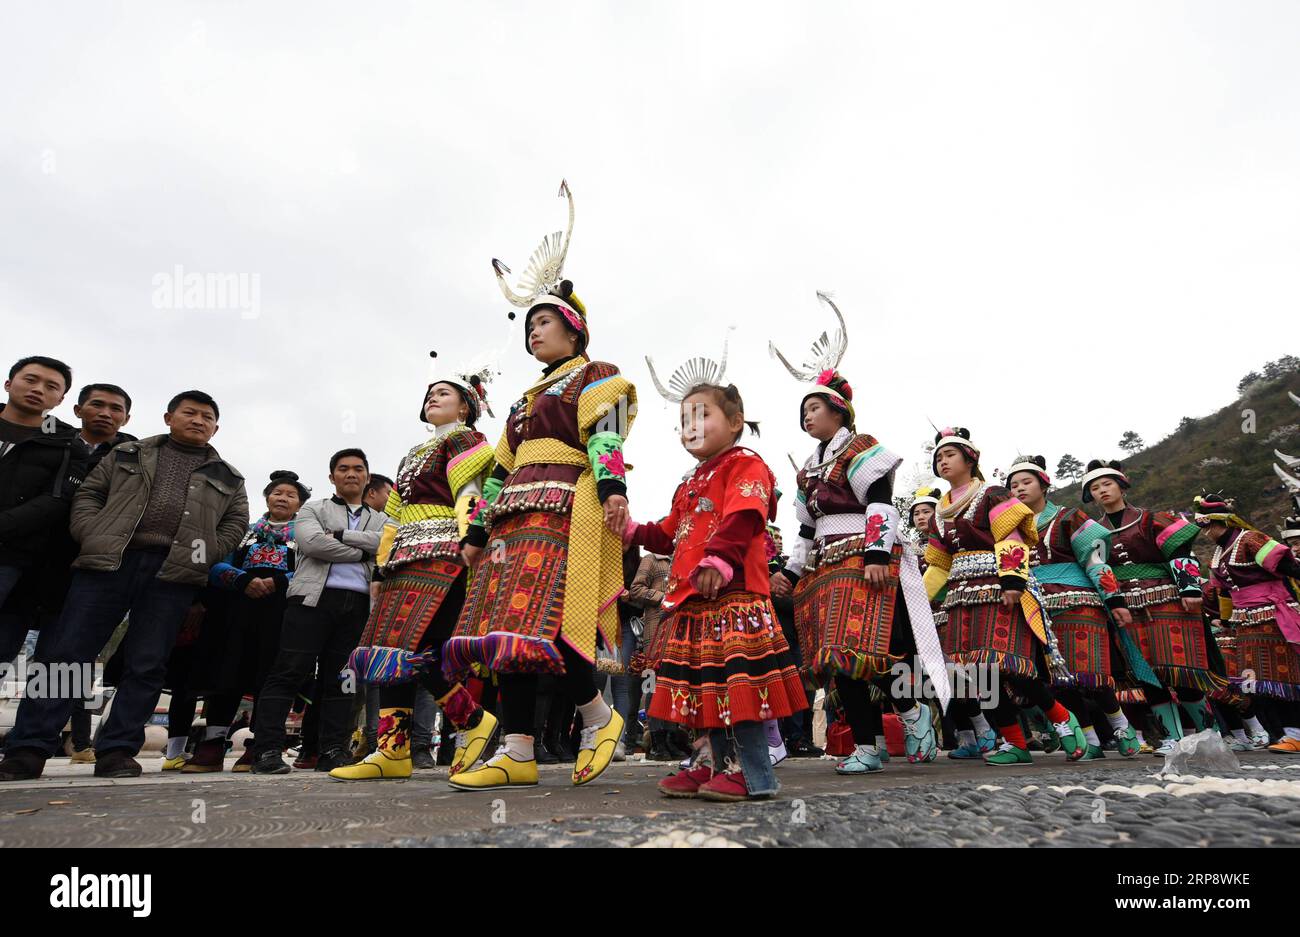 (190316) -- DANZHAI, 16 marzo 2019 (Xinhua) -- le ragazze del gruppo etnico Miao ballano al ritmo del tamburo di legno battendo, durante la celebrazione annuale del Fangu Drumming Festival, al villaggio di Qingjiang, nella contea di Danzhai, nella provincia di Guizhou della Cina sud-occidentale, 16 marzo 2019. Il Fangu Drumming Festival, un tradizionale festival locale con una storia di quasi 600 anni, offre balli con tamburi di legno, combattimento con tori, canti d'amore antifonali e altre forme d'arte popolare tradizionali. (Xinhua/Yang Wenbin) CHINA-GUIZHOU-ETNICO MIAO-FANGU FESTIVAL-DUMMING CELEBRATION(CN) PUBLICATIONxNOTxINxCHN Foto Stock